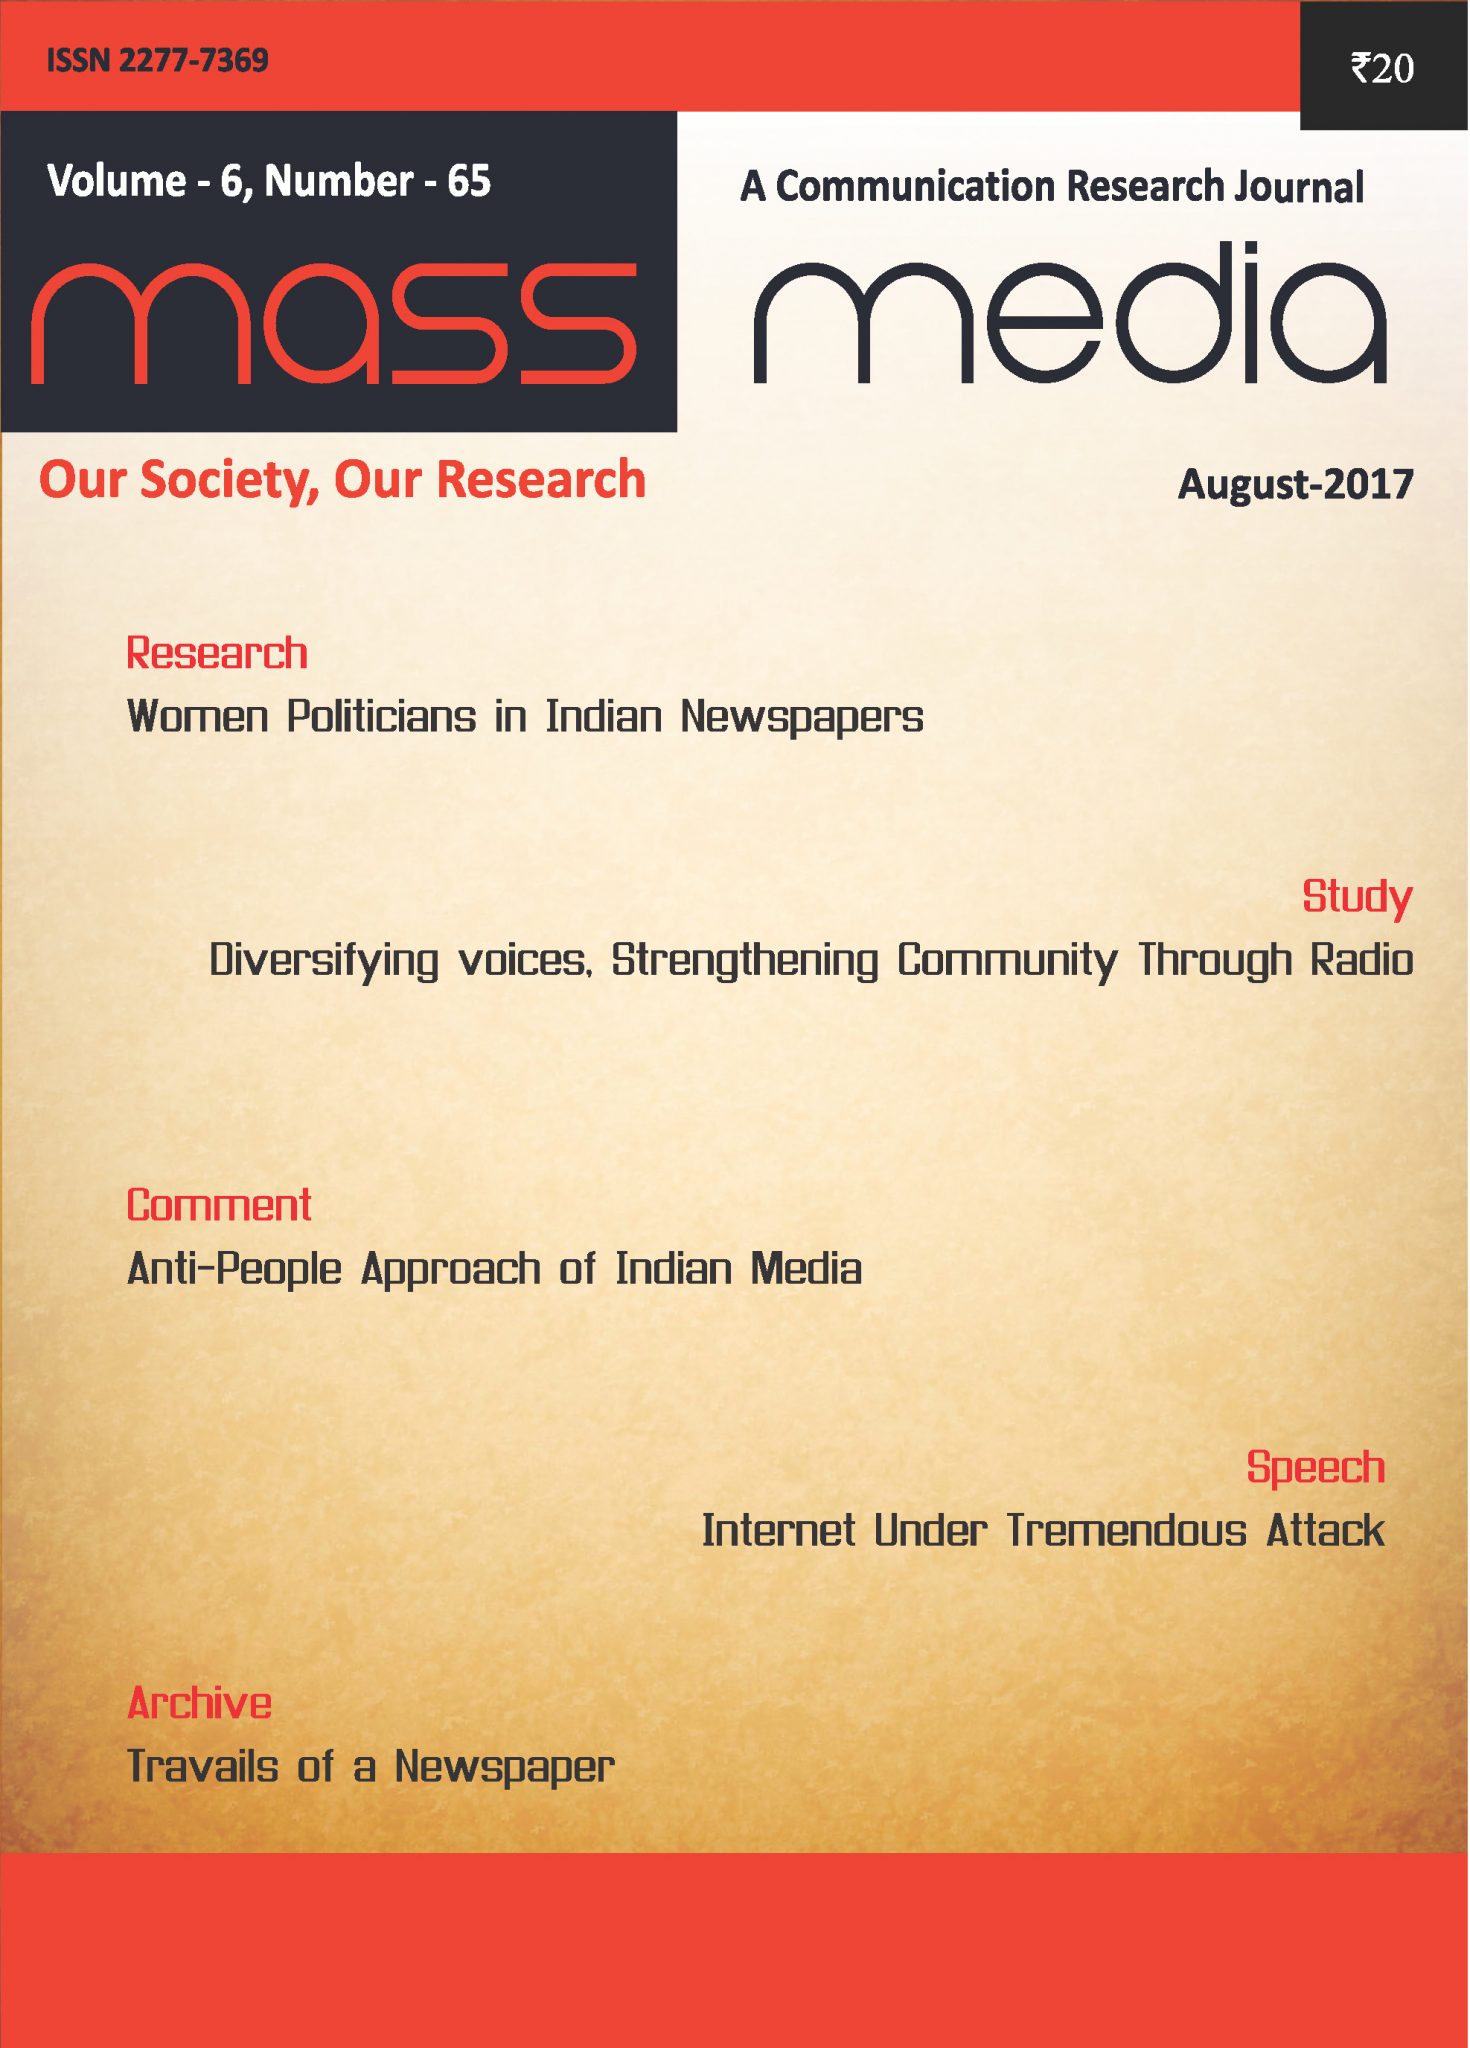 Mass Media (August 2017)